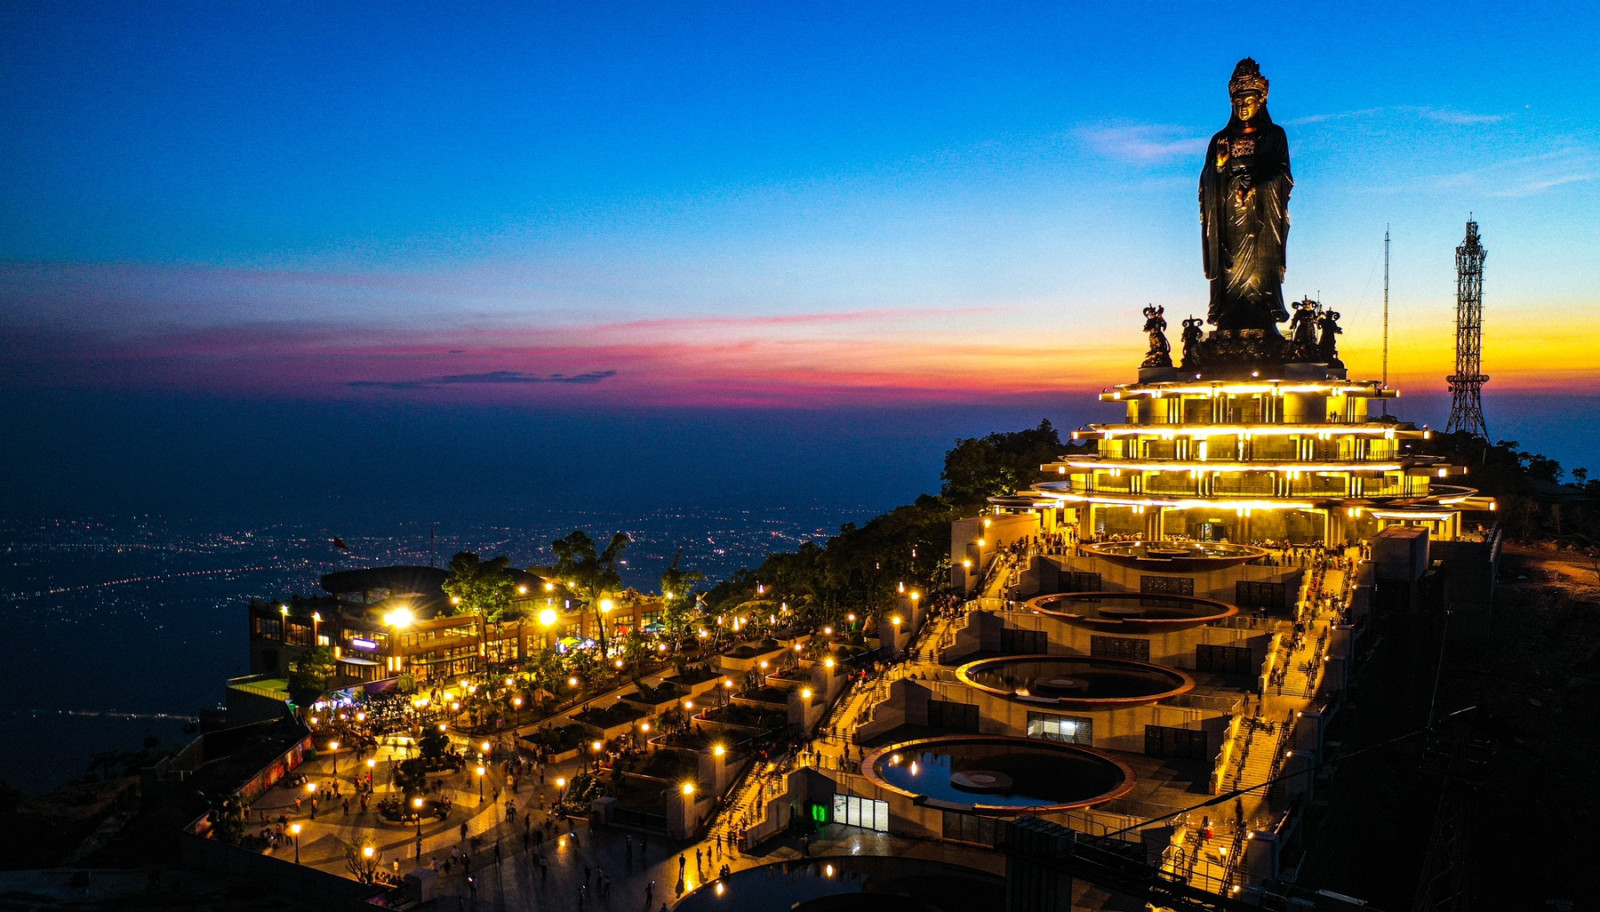 Núi Bà Đen Tây Ninh - Mỗi năm thu hút hơn 500.000 lượt du khách đến tham quan và lễ bái